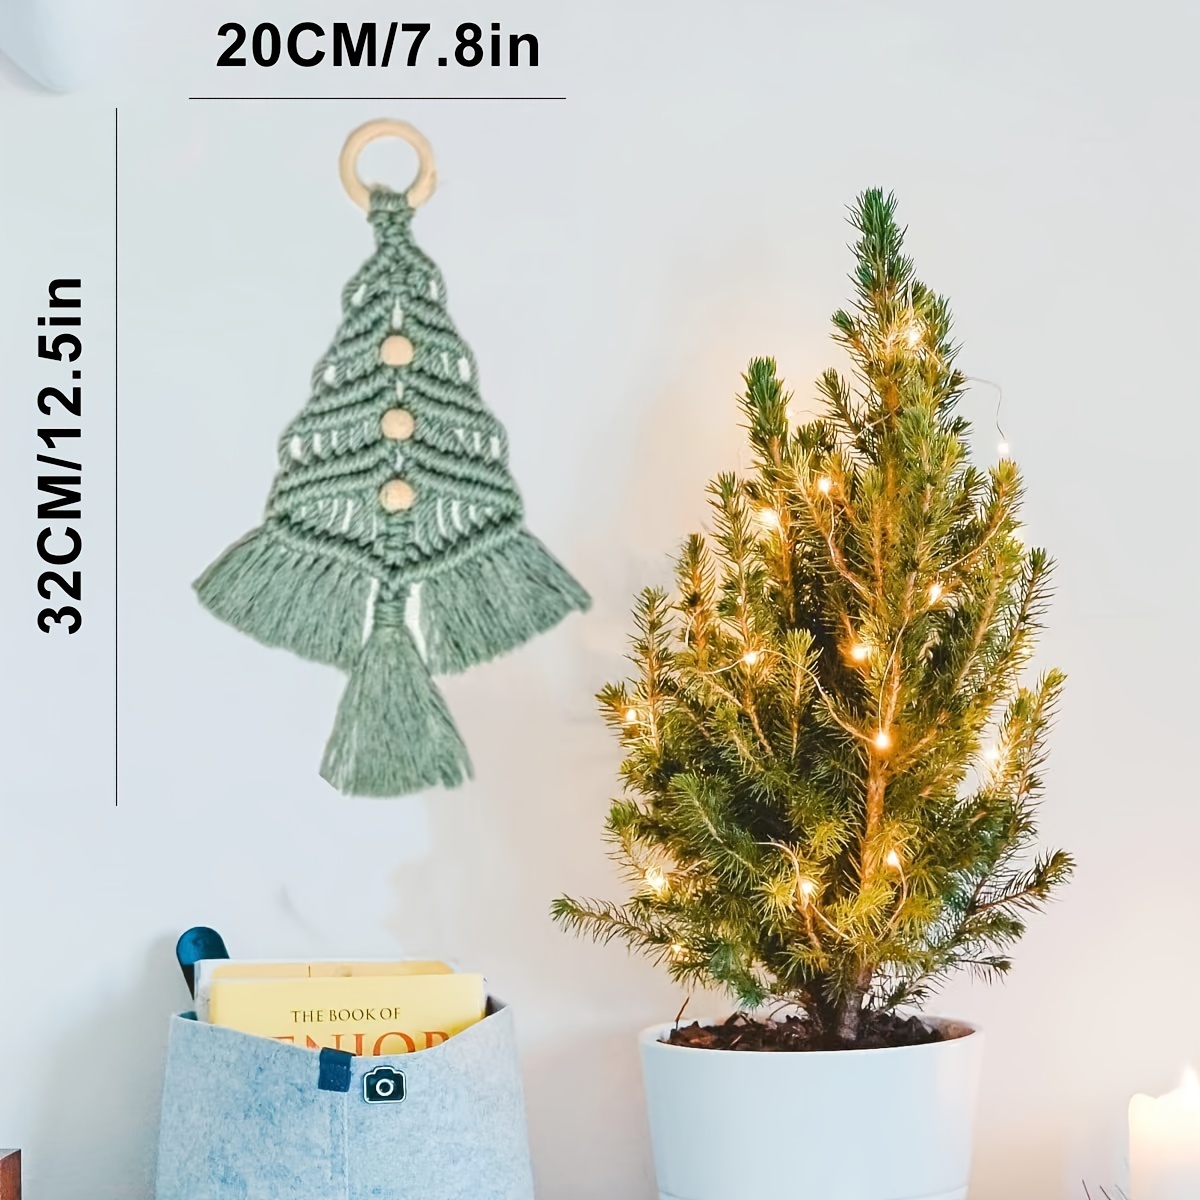  nerhemg Xmas Tree Craft Kit Christmas Material Set